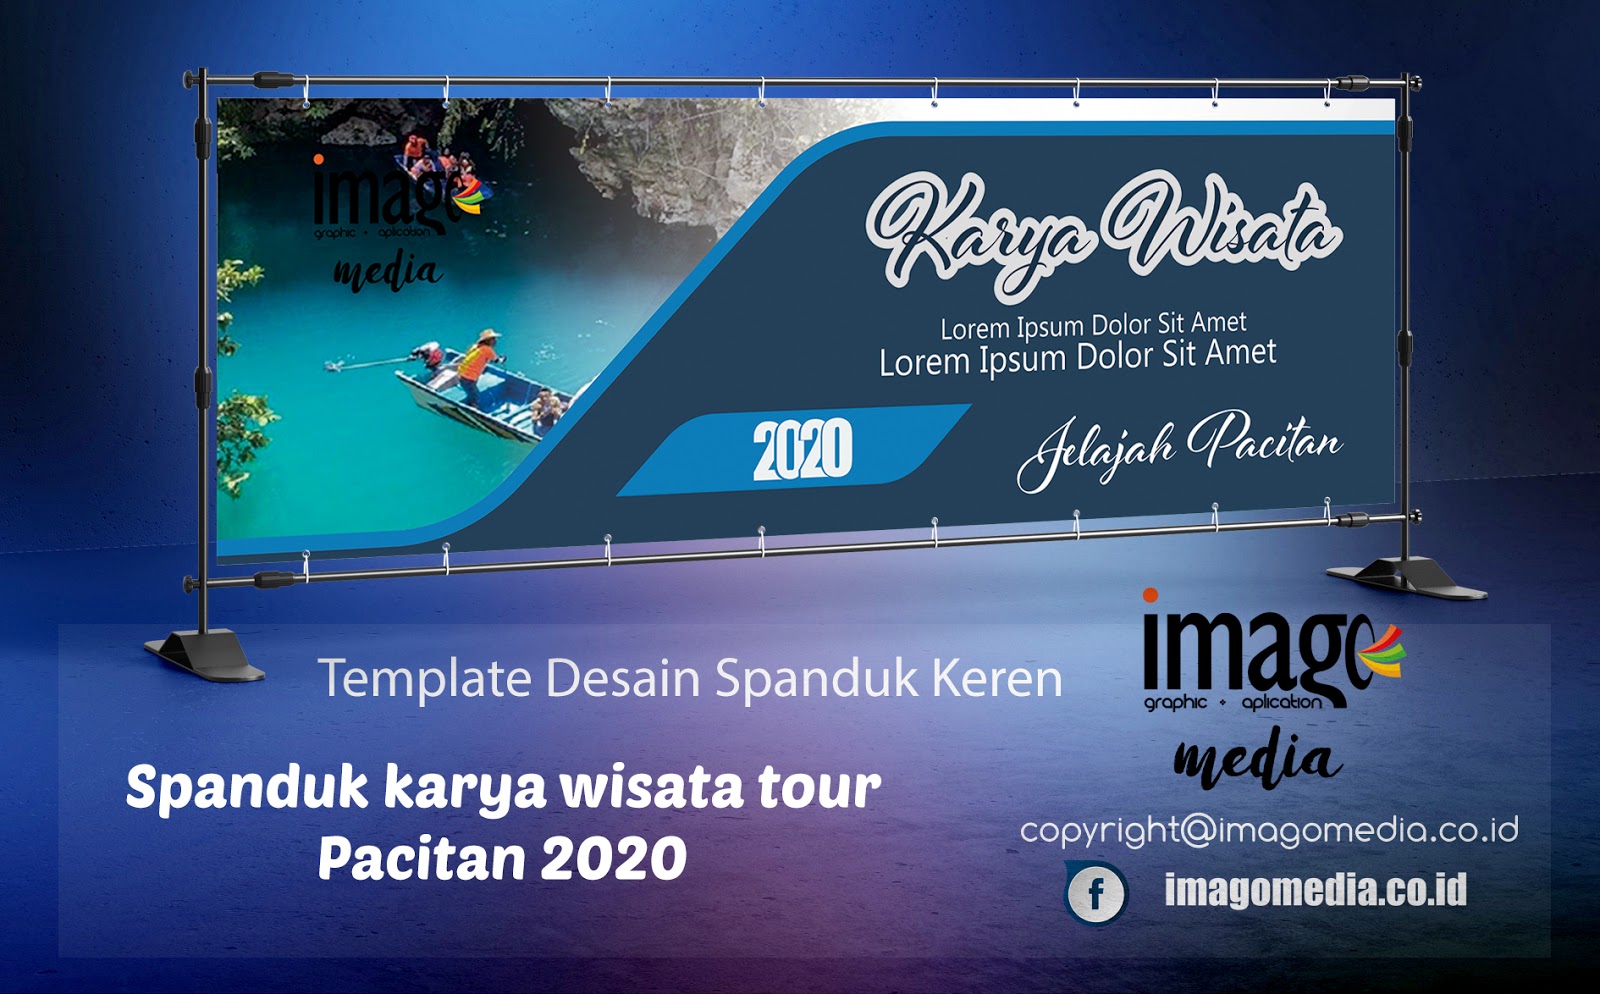 Desain Spanduk Karya Wisata Tour Pacitan 2020 Imago